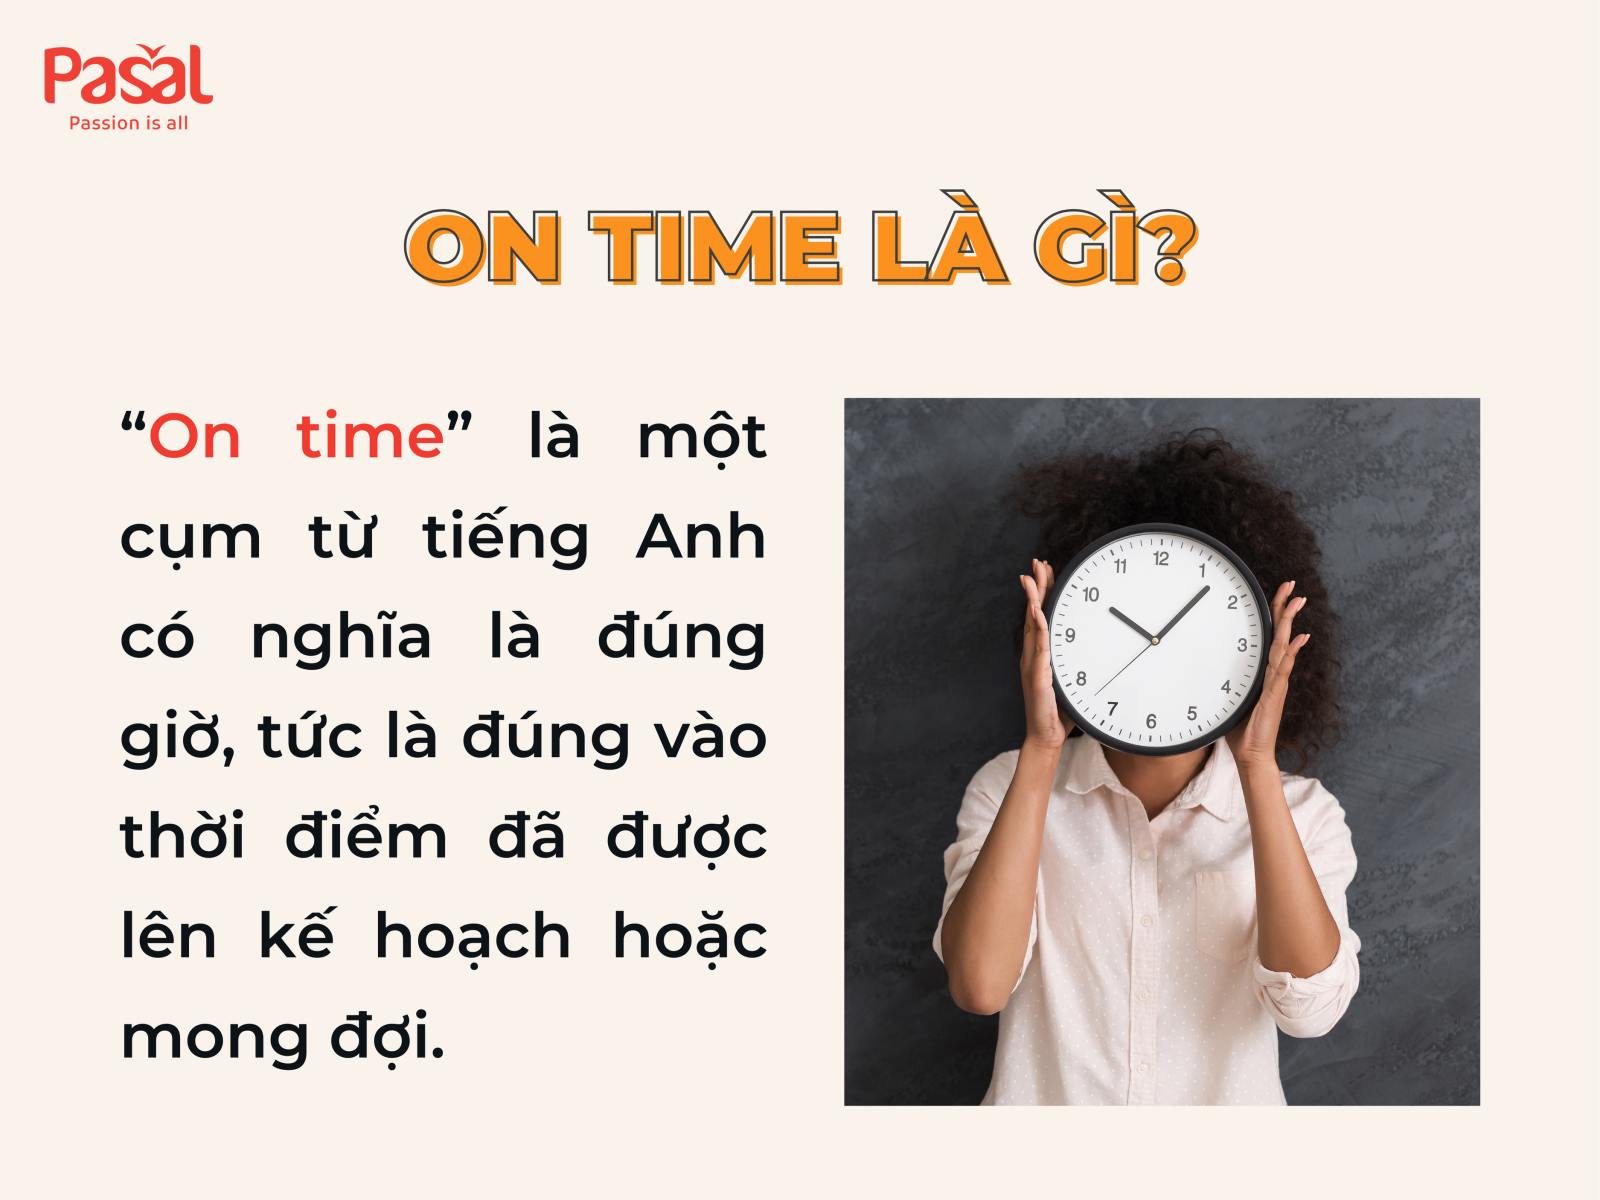 On time là gì?